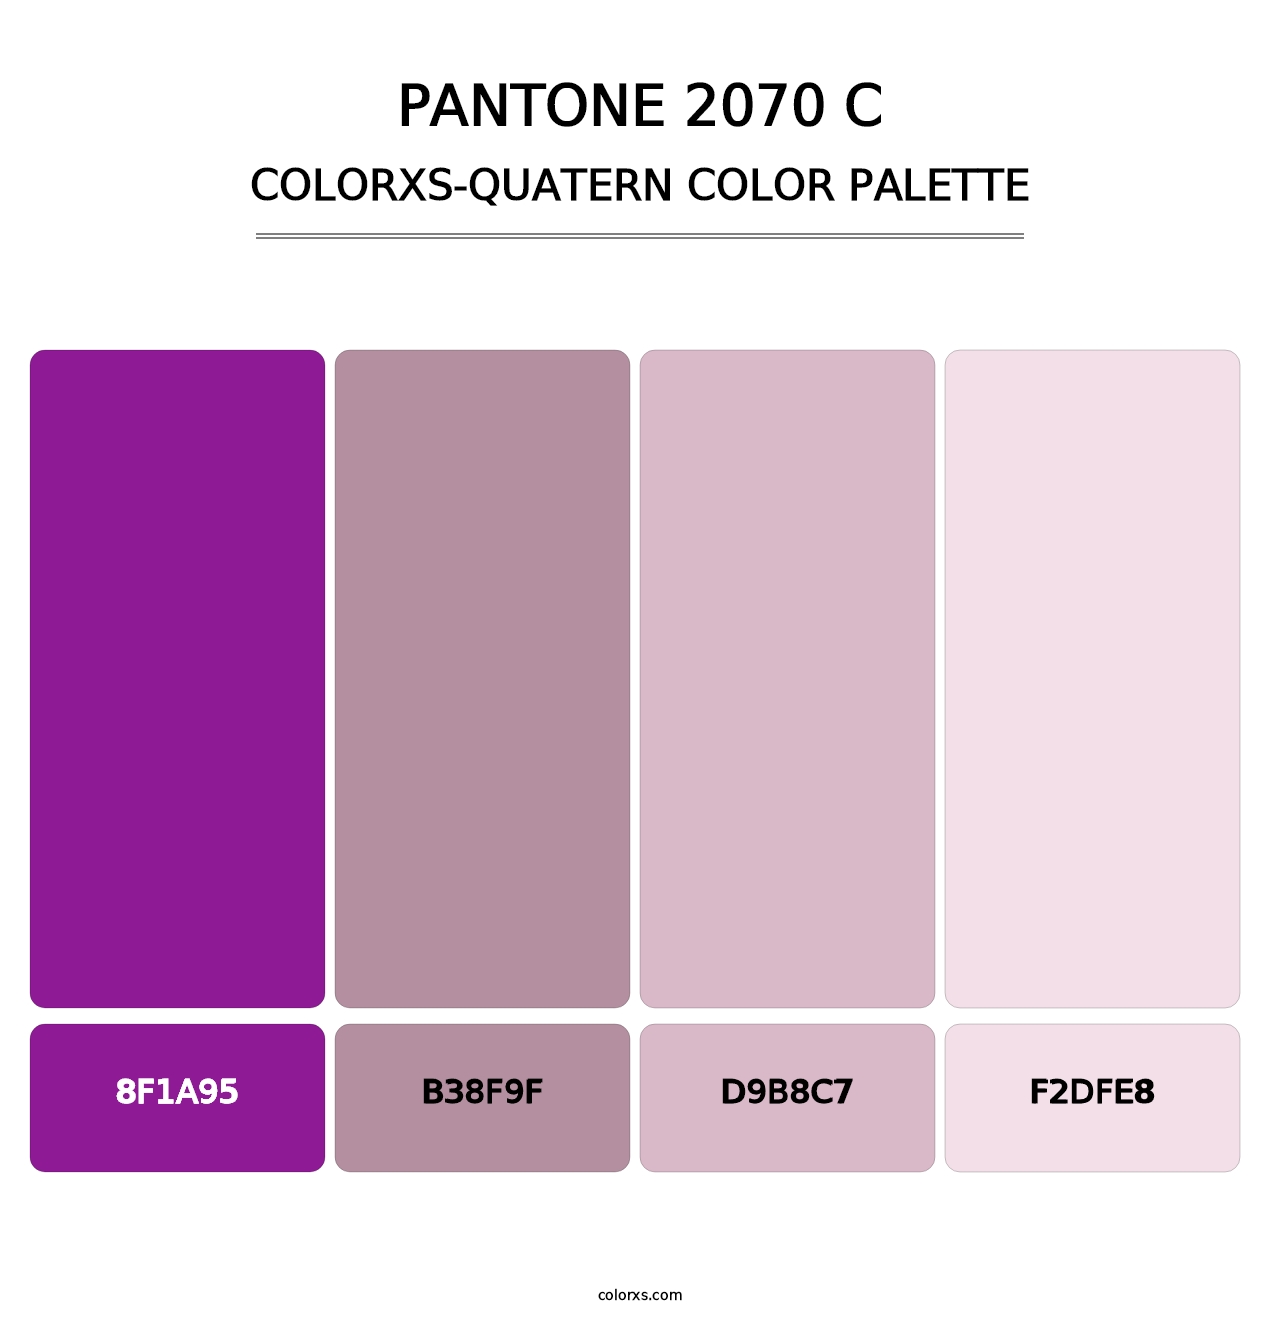 PANTONE 2070 C - Colorxs Quatern Palette